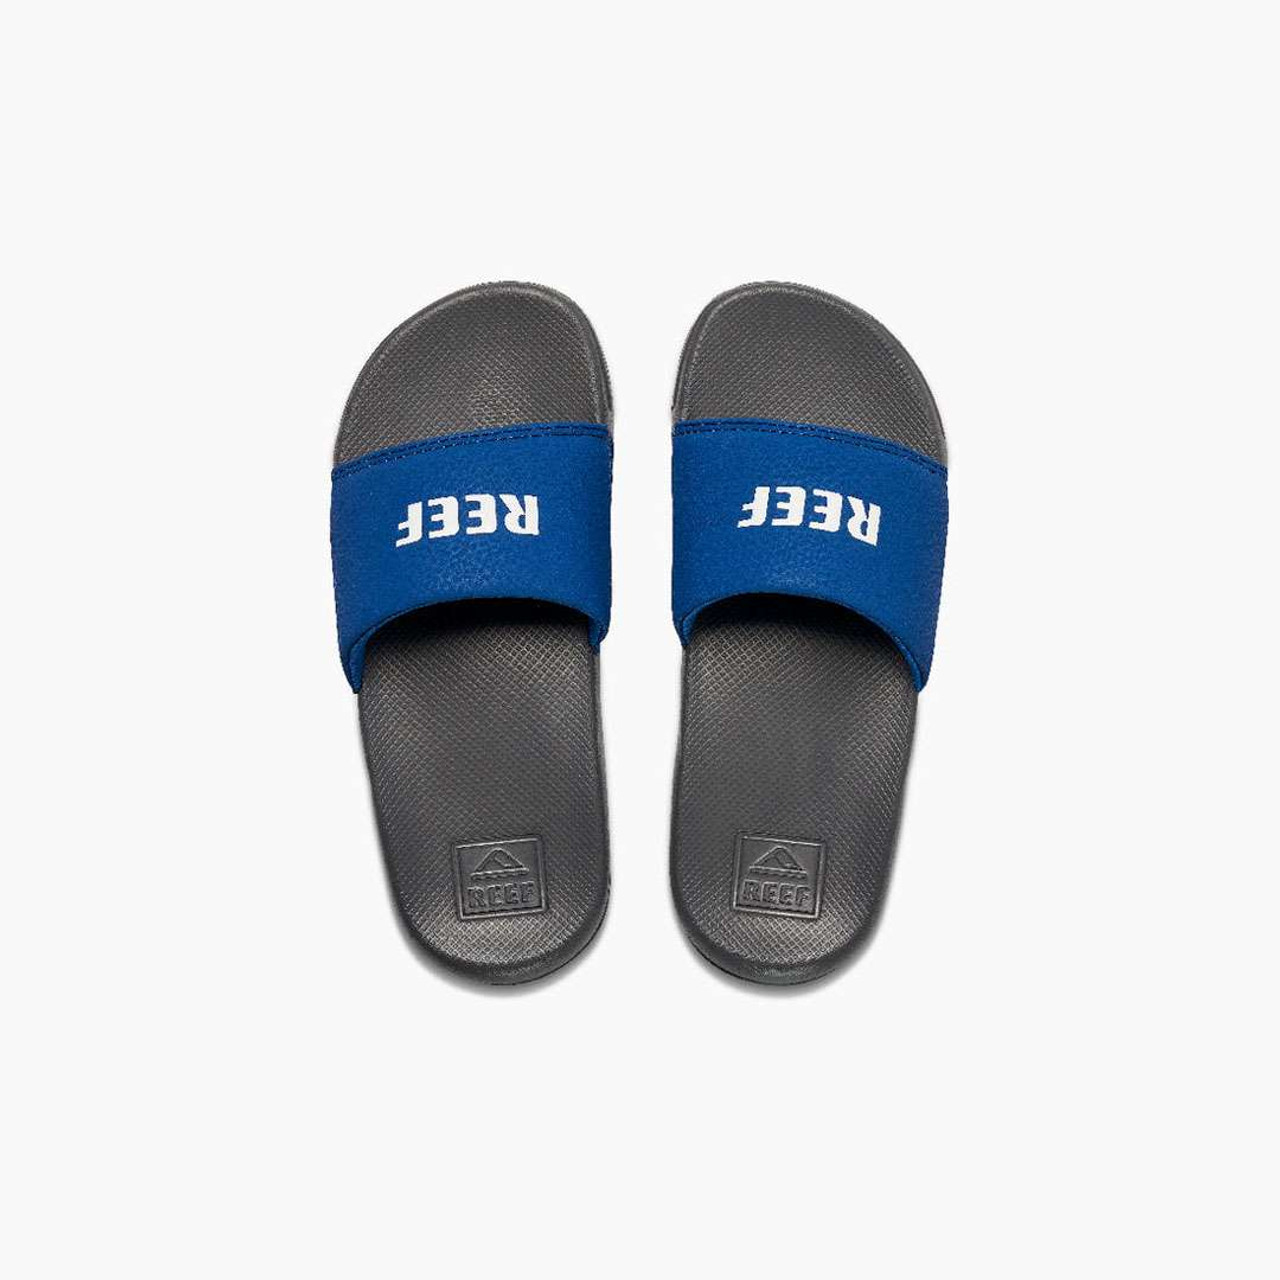 Reef Slide Sandals - Grey/ Blue